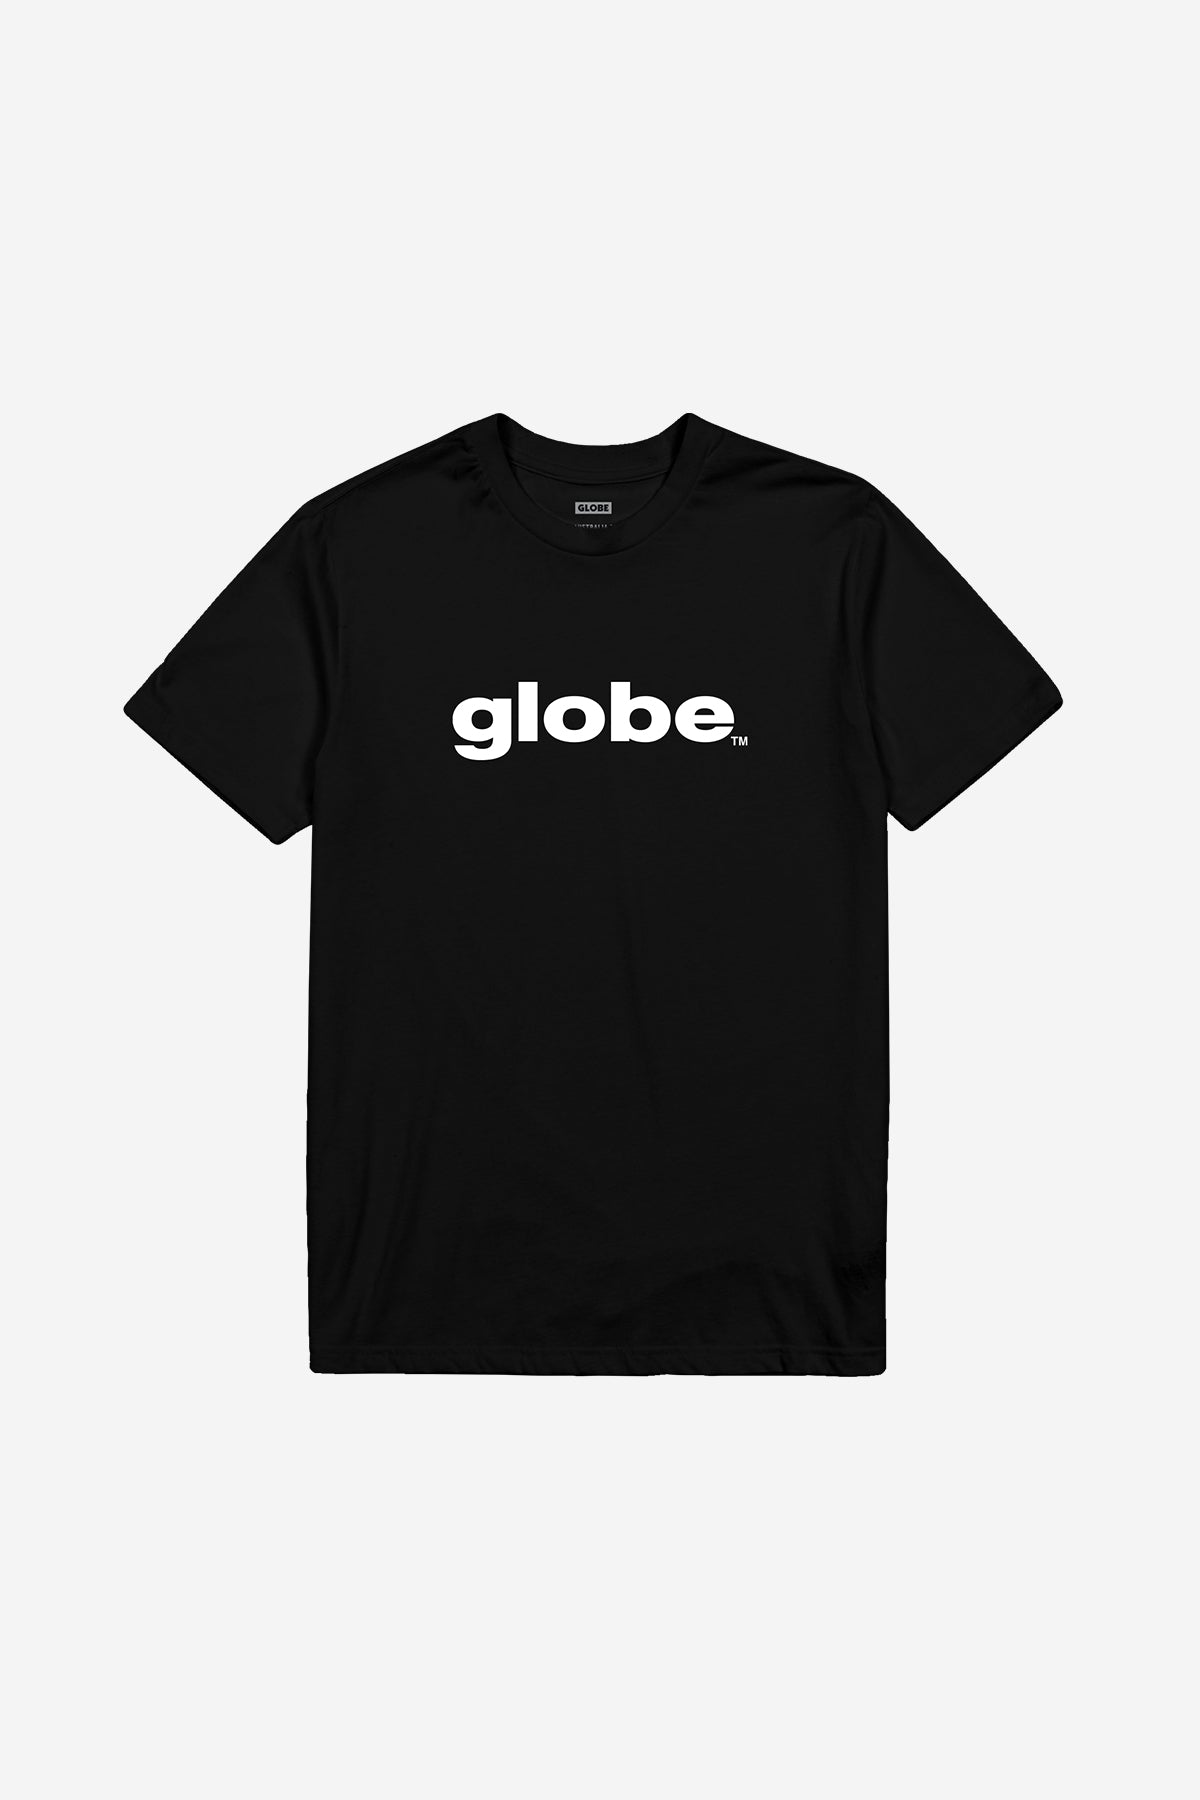 Globe - O.G Tee - Black